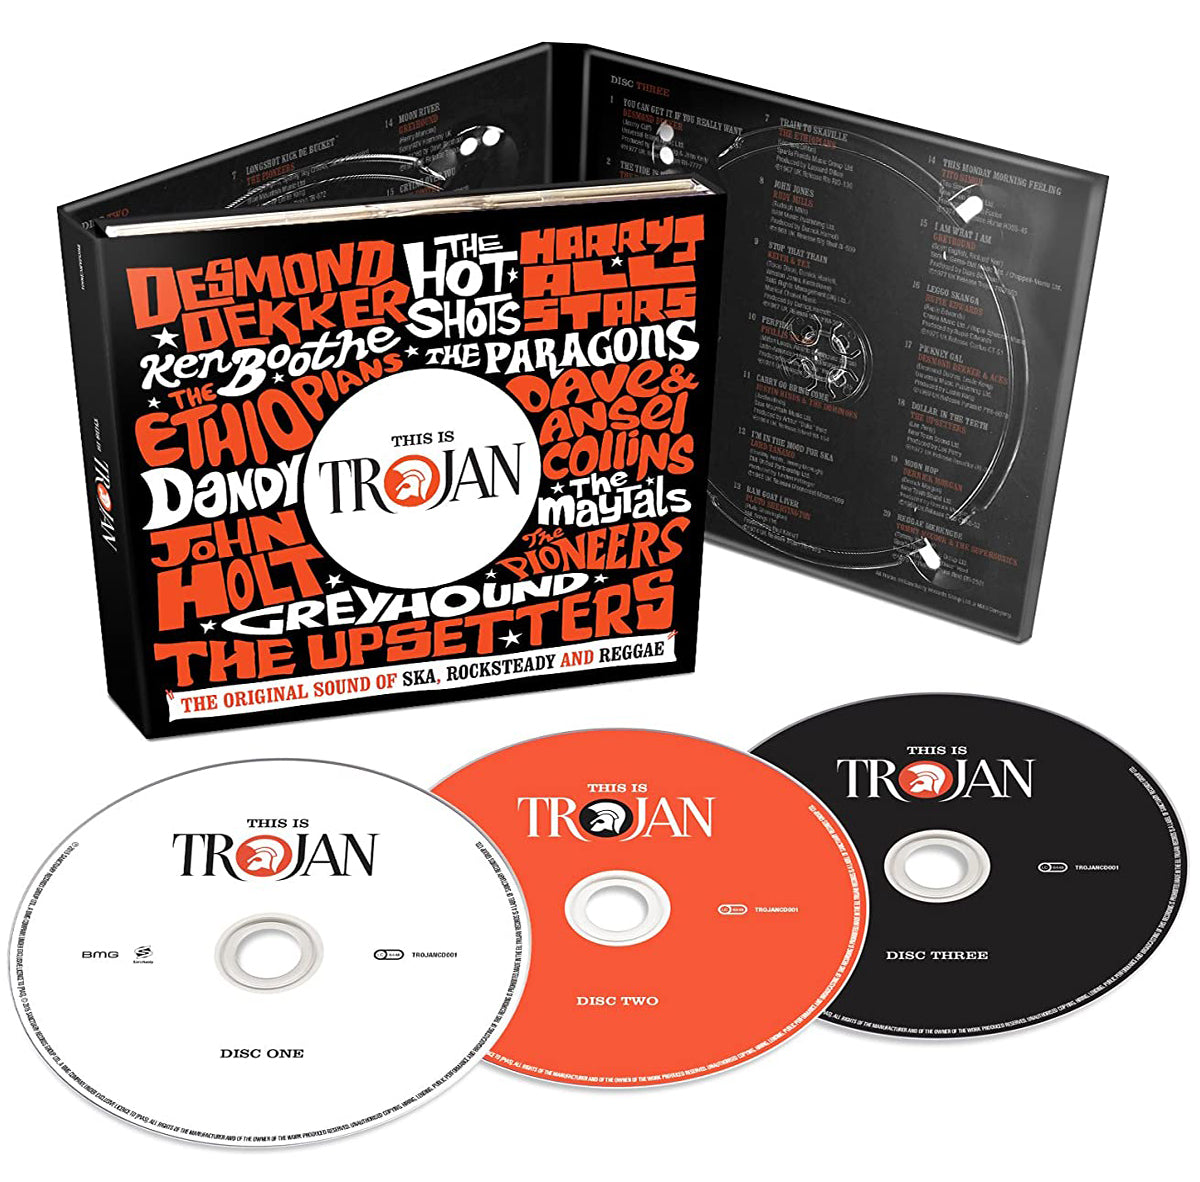 [CD] 各种艺术家都是特洛伊木马记录英国 IMPORT 3 DISC SET